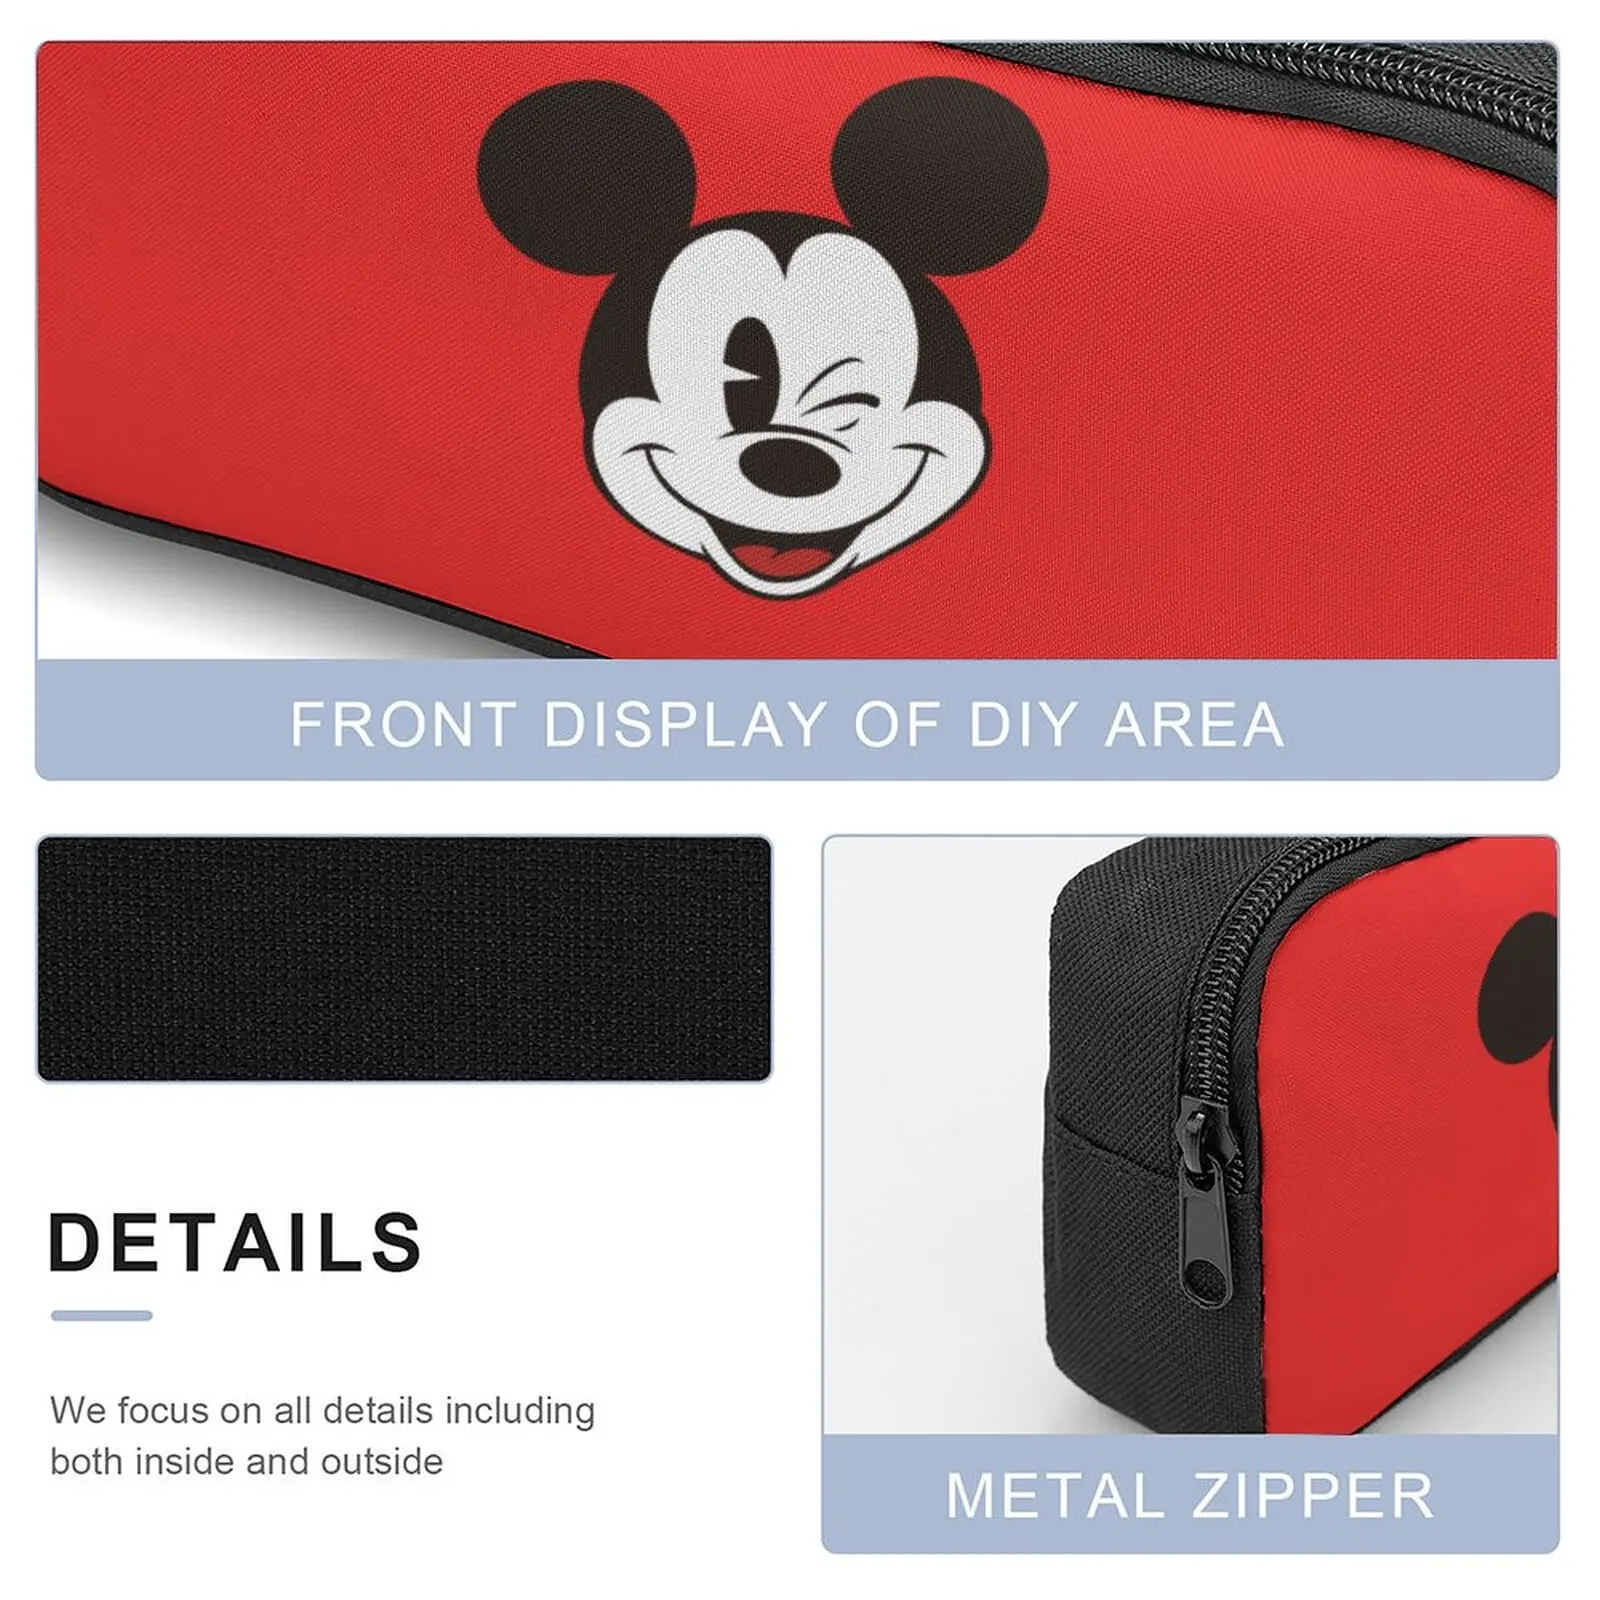 Набор сумок Dream Cartoon по индивидуальному заказу для мальчиков и девочек с эксклюзивным рисунком Disney, сумка большой емкости из трех предметов